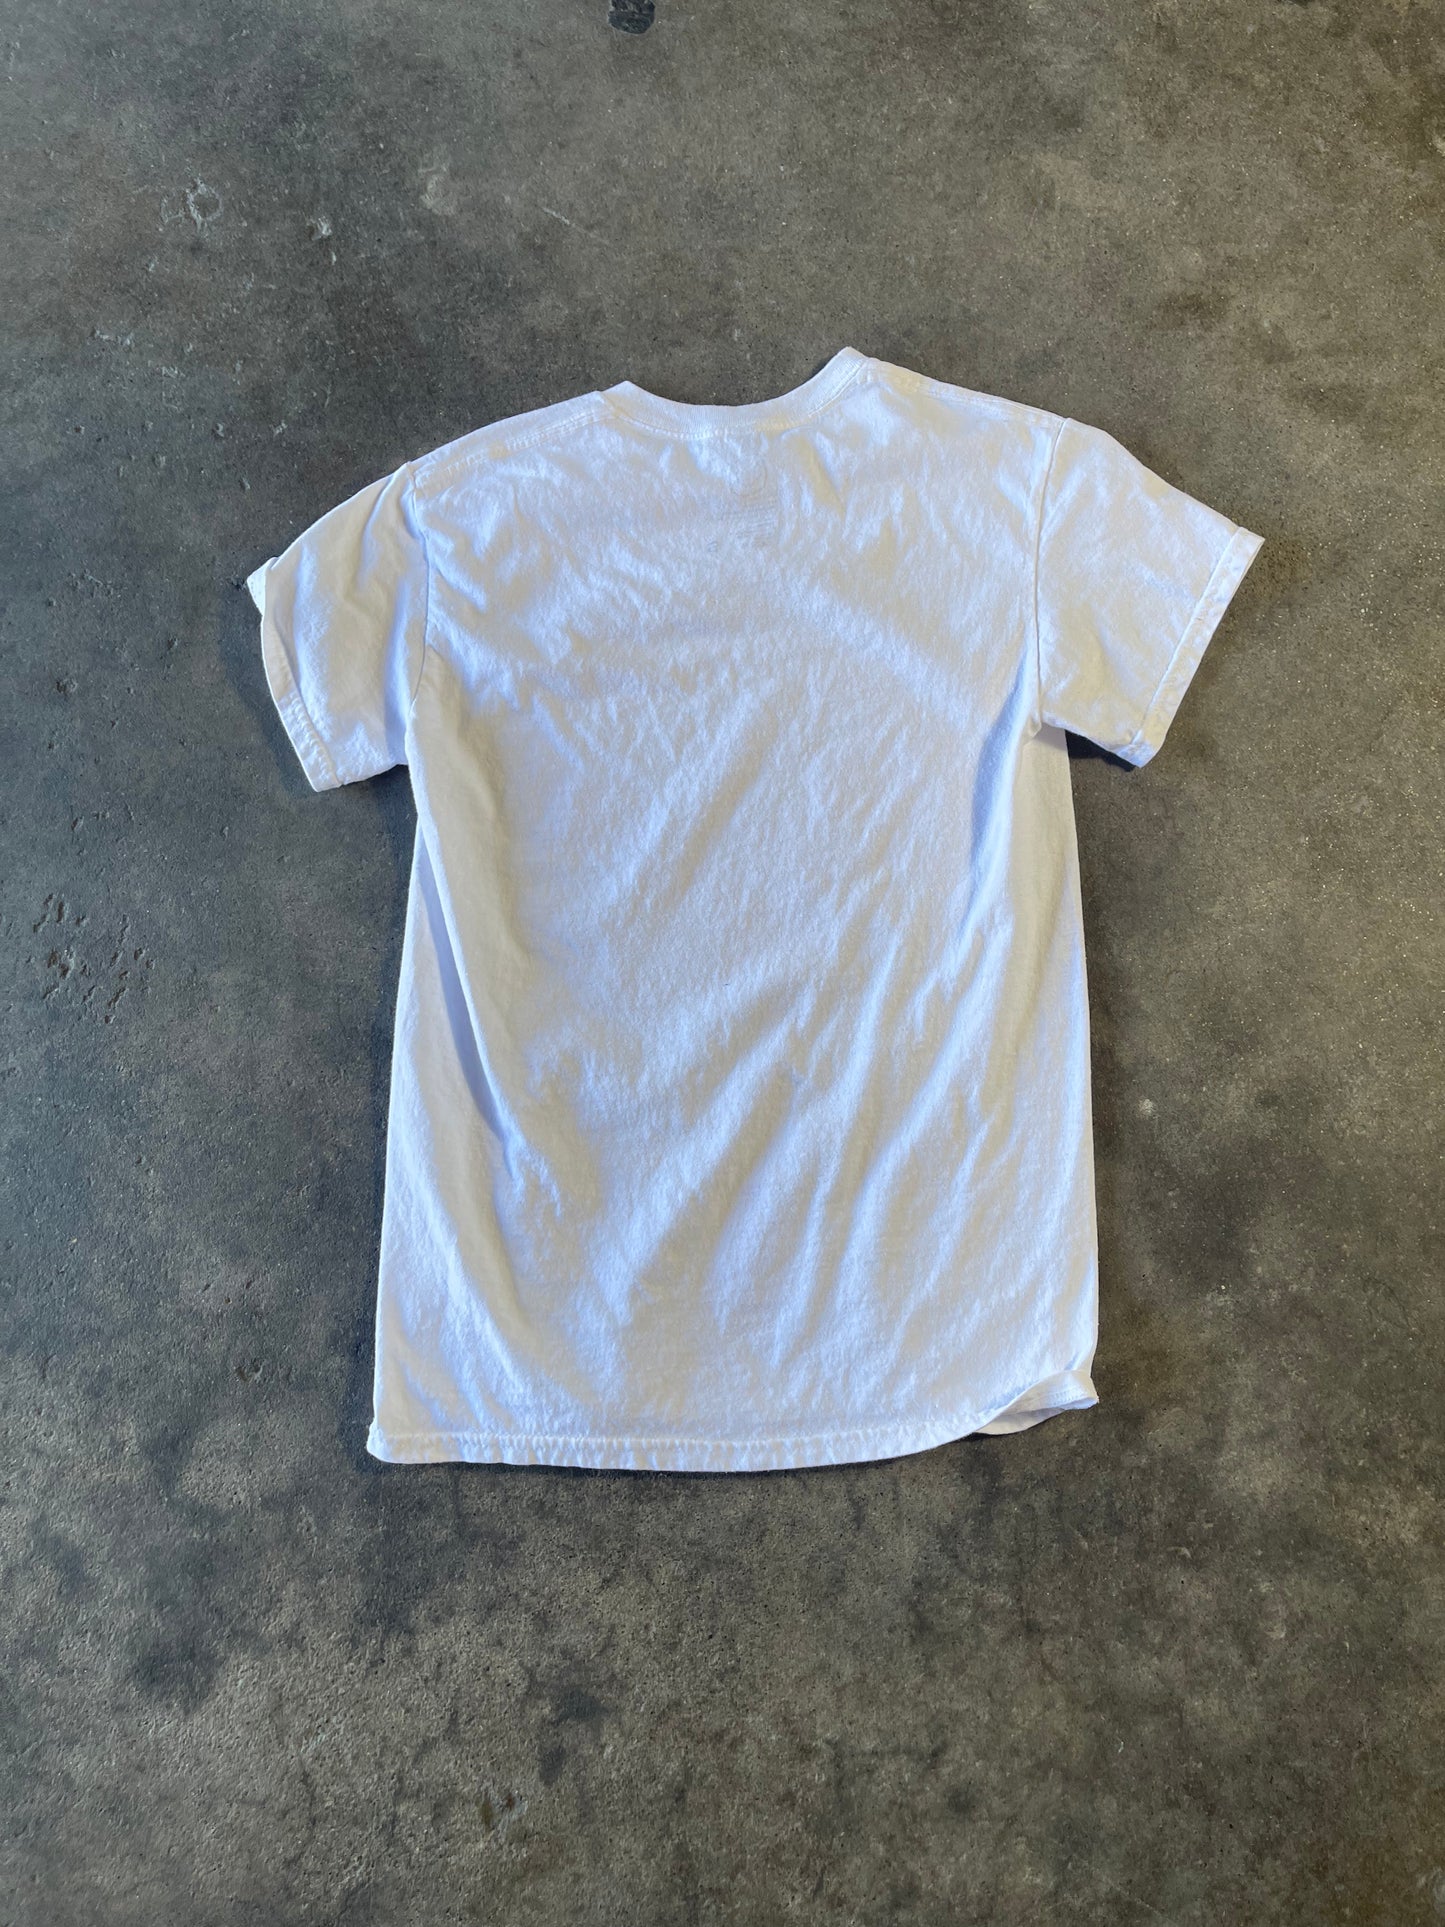 Nirvana in Utero Shirt Small